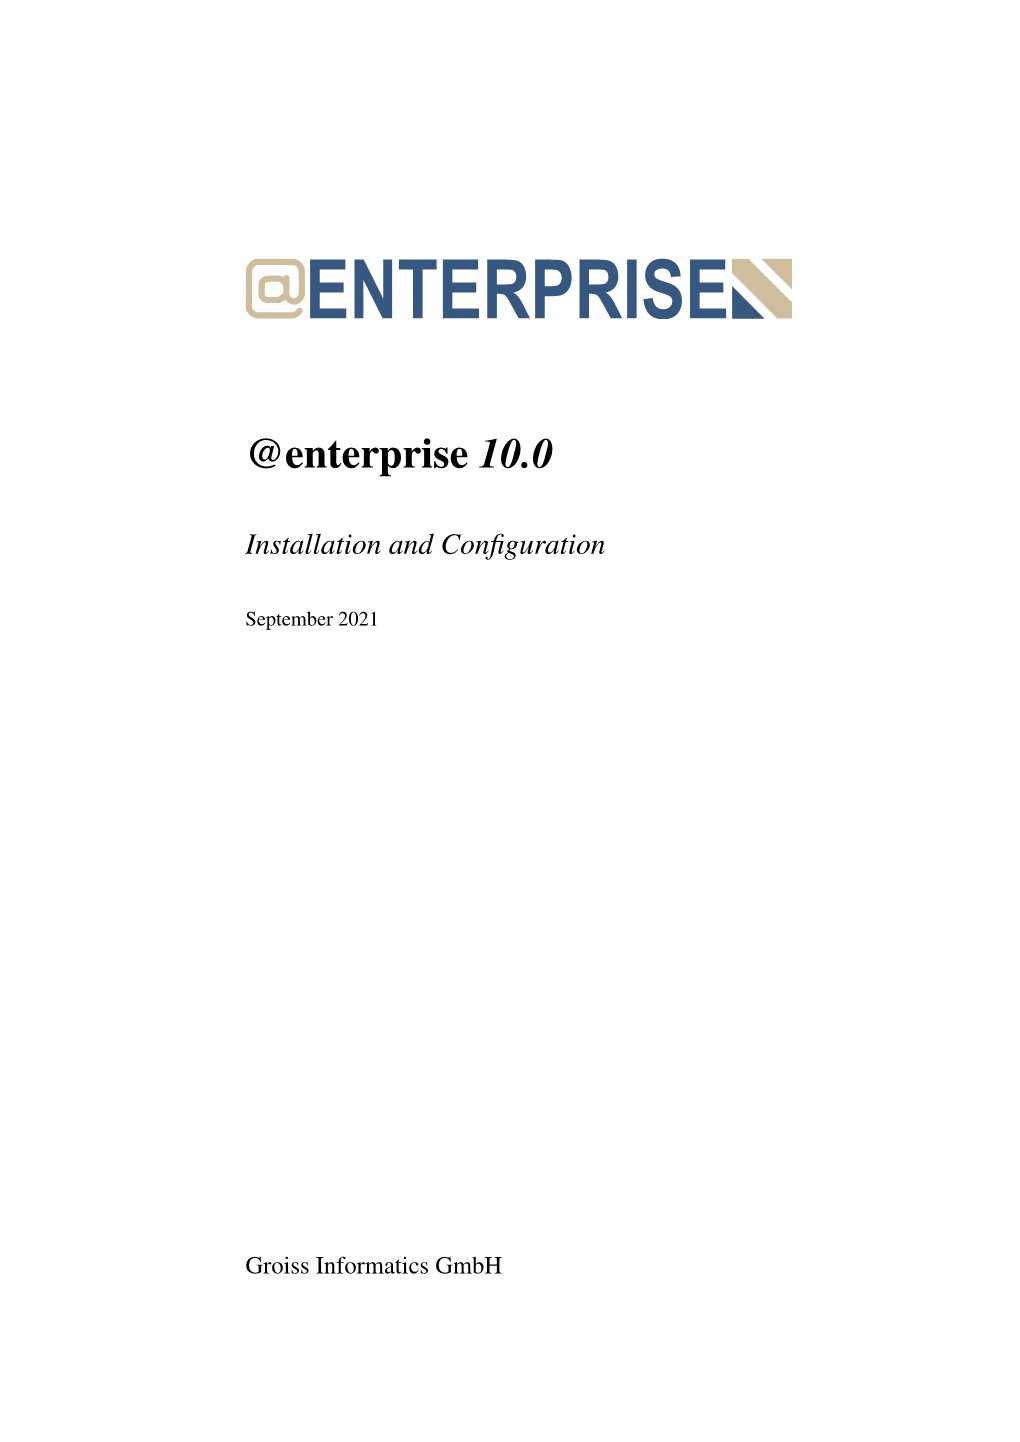 Enterprise 10.0